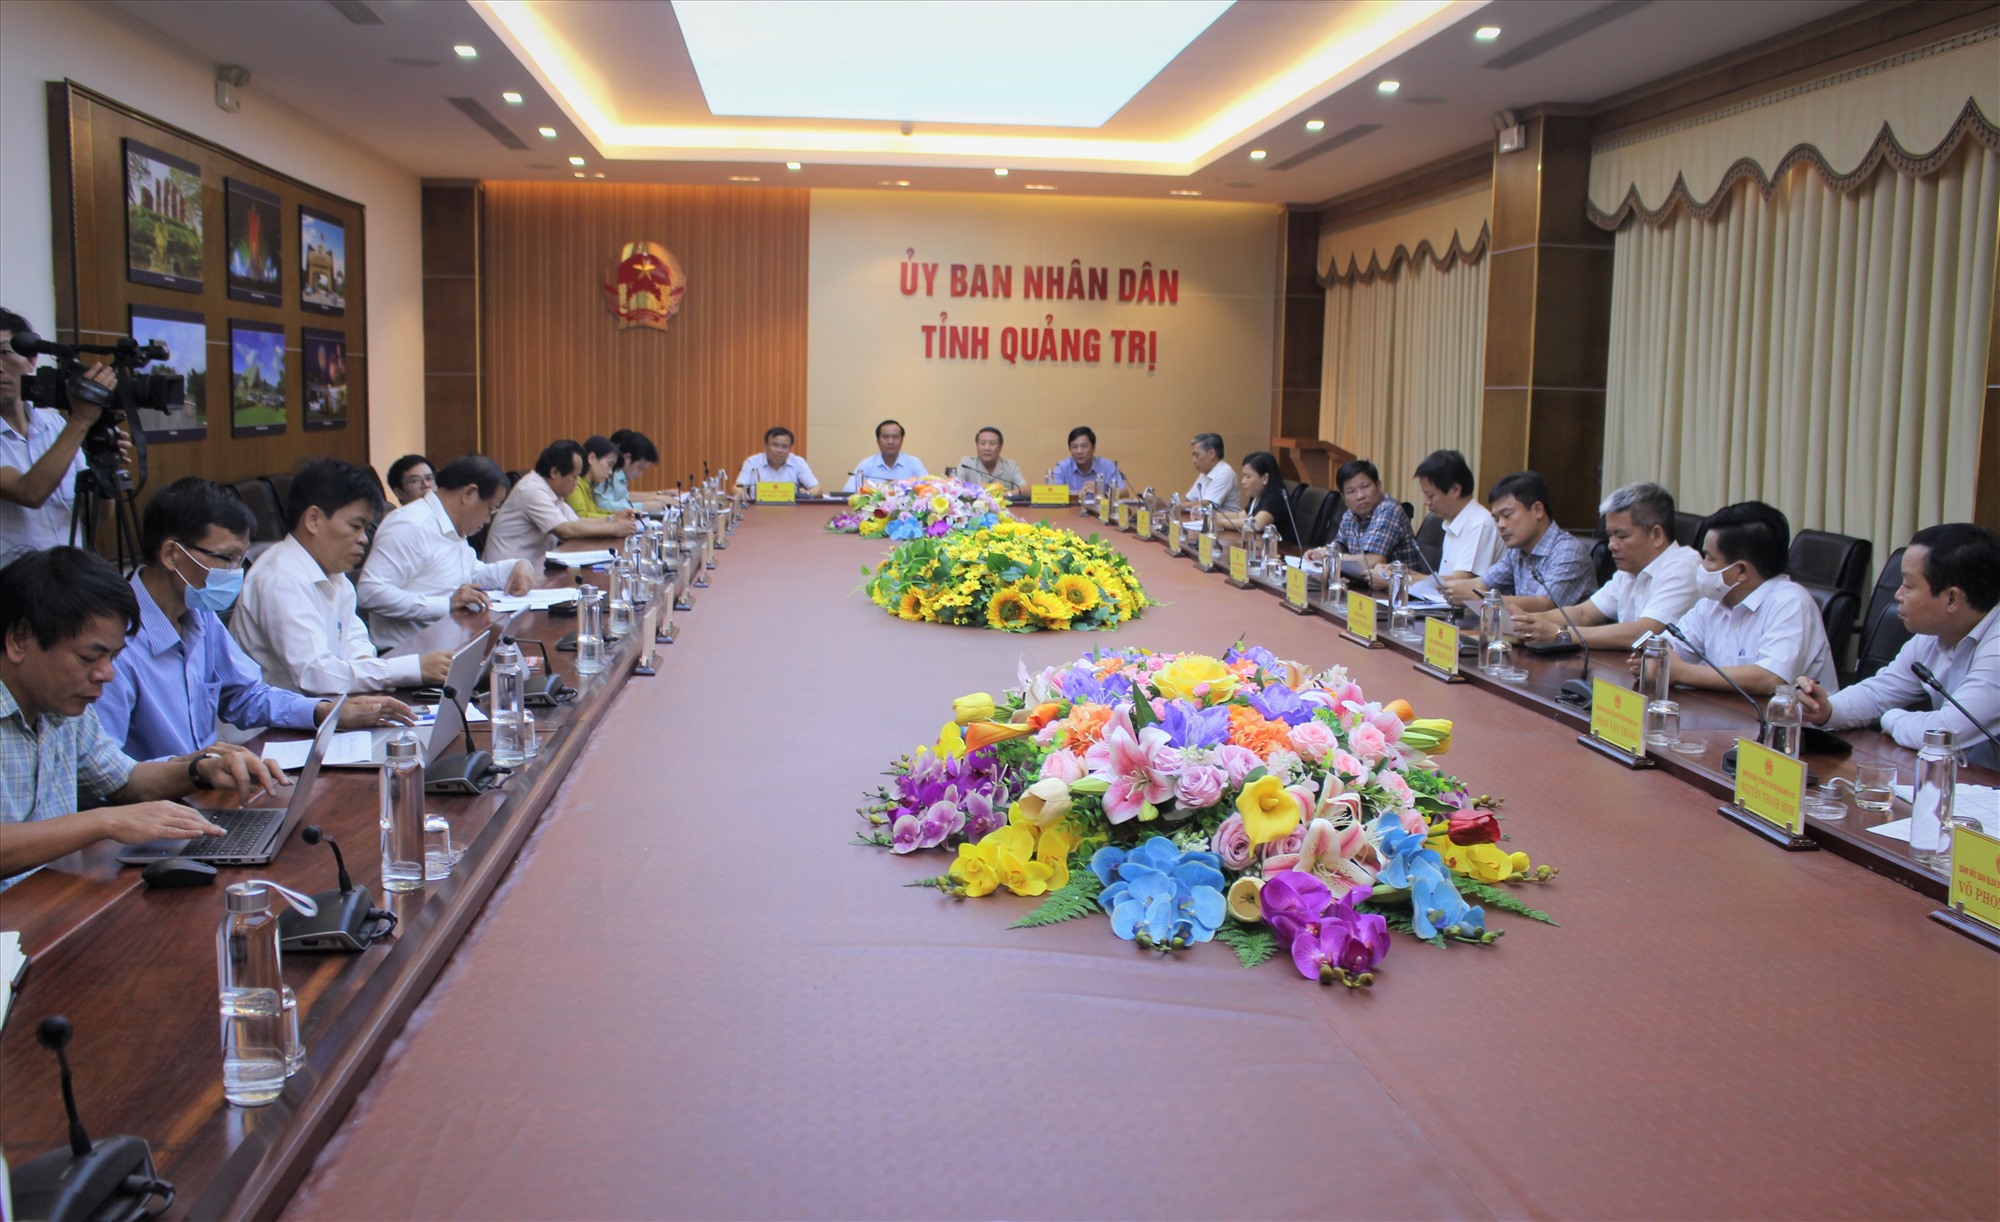 Chủ tịch UBND tỉnh Võ Văn Hưng và các phó chủ tịch UBND tỉnh tham dự cuộc họp tại điểm cầu Quảng Trị - Ảnh: H.T